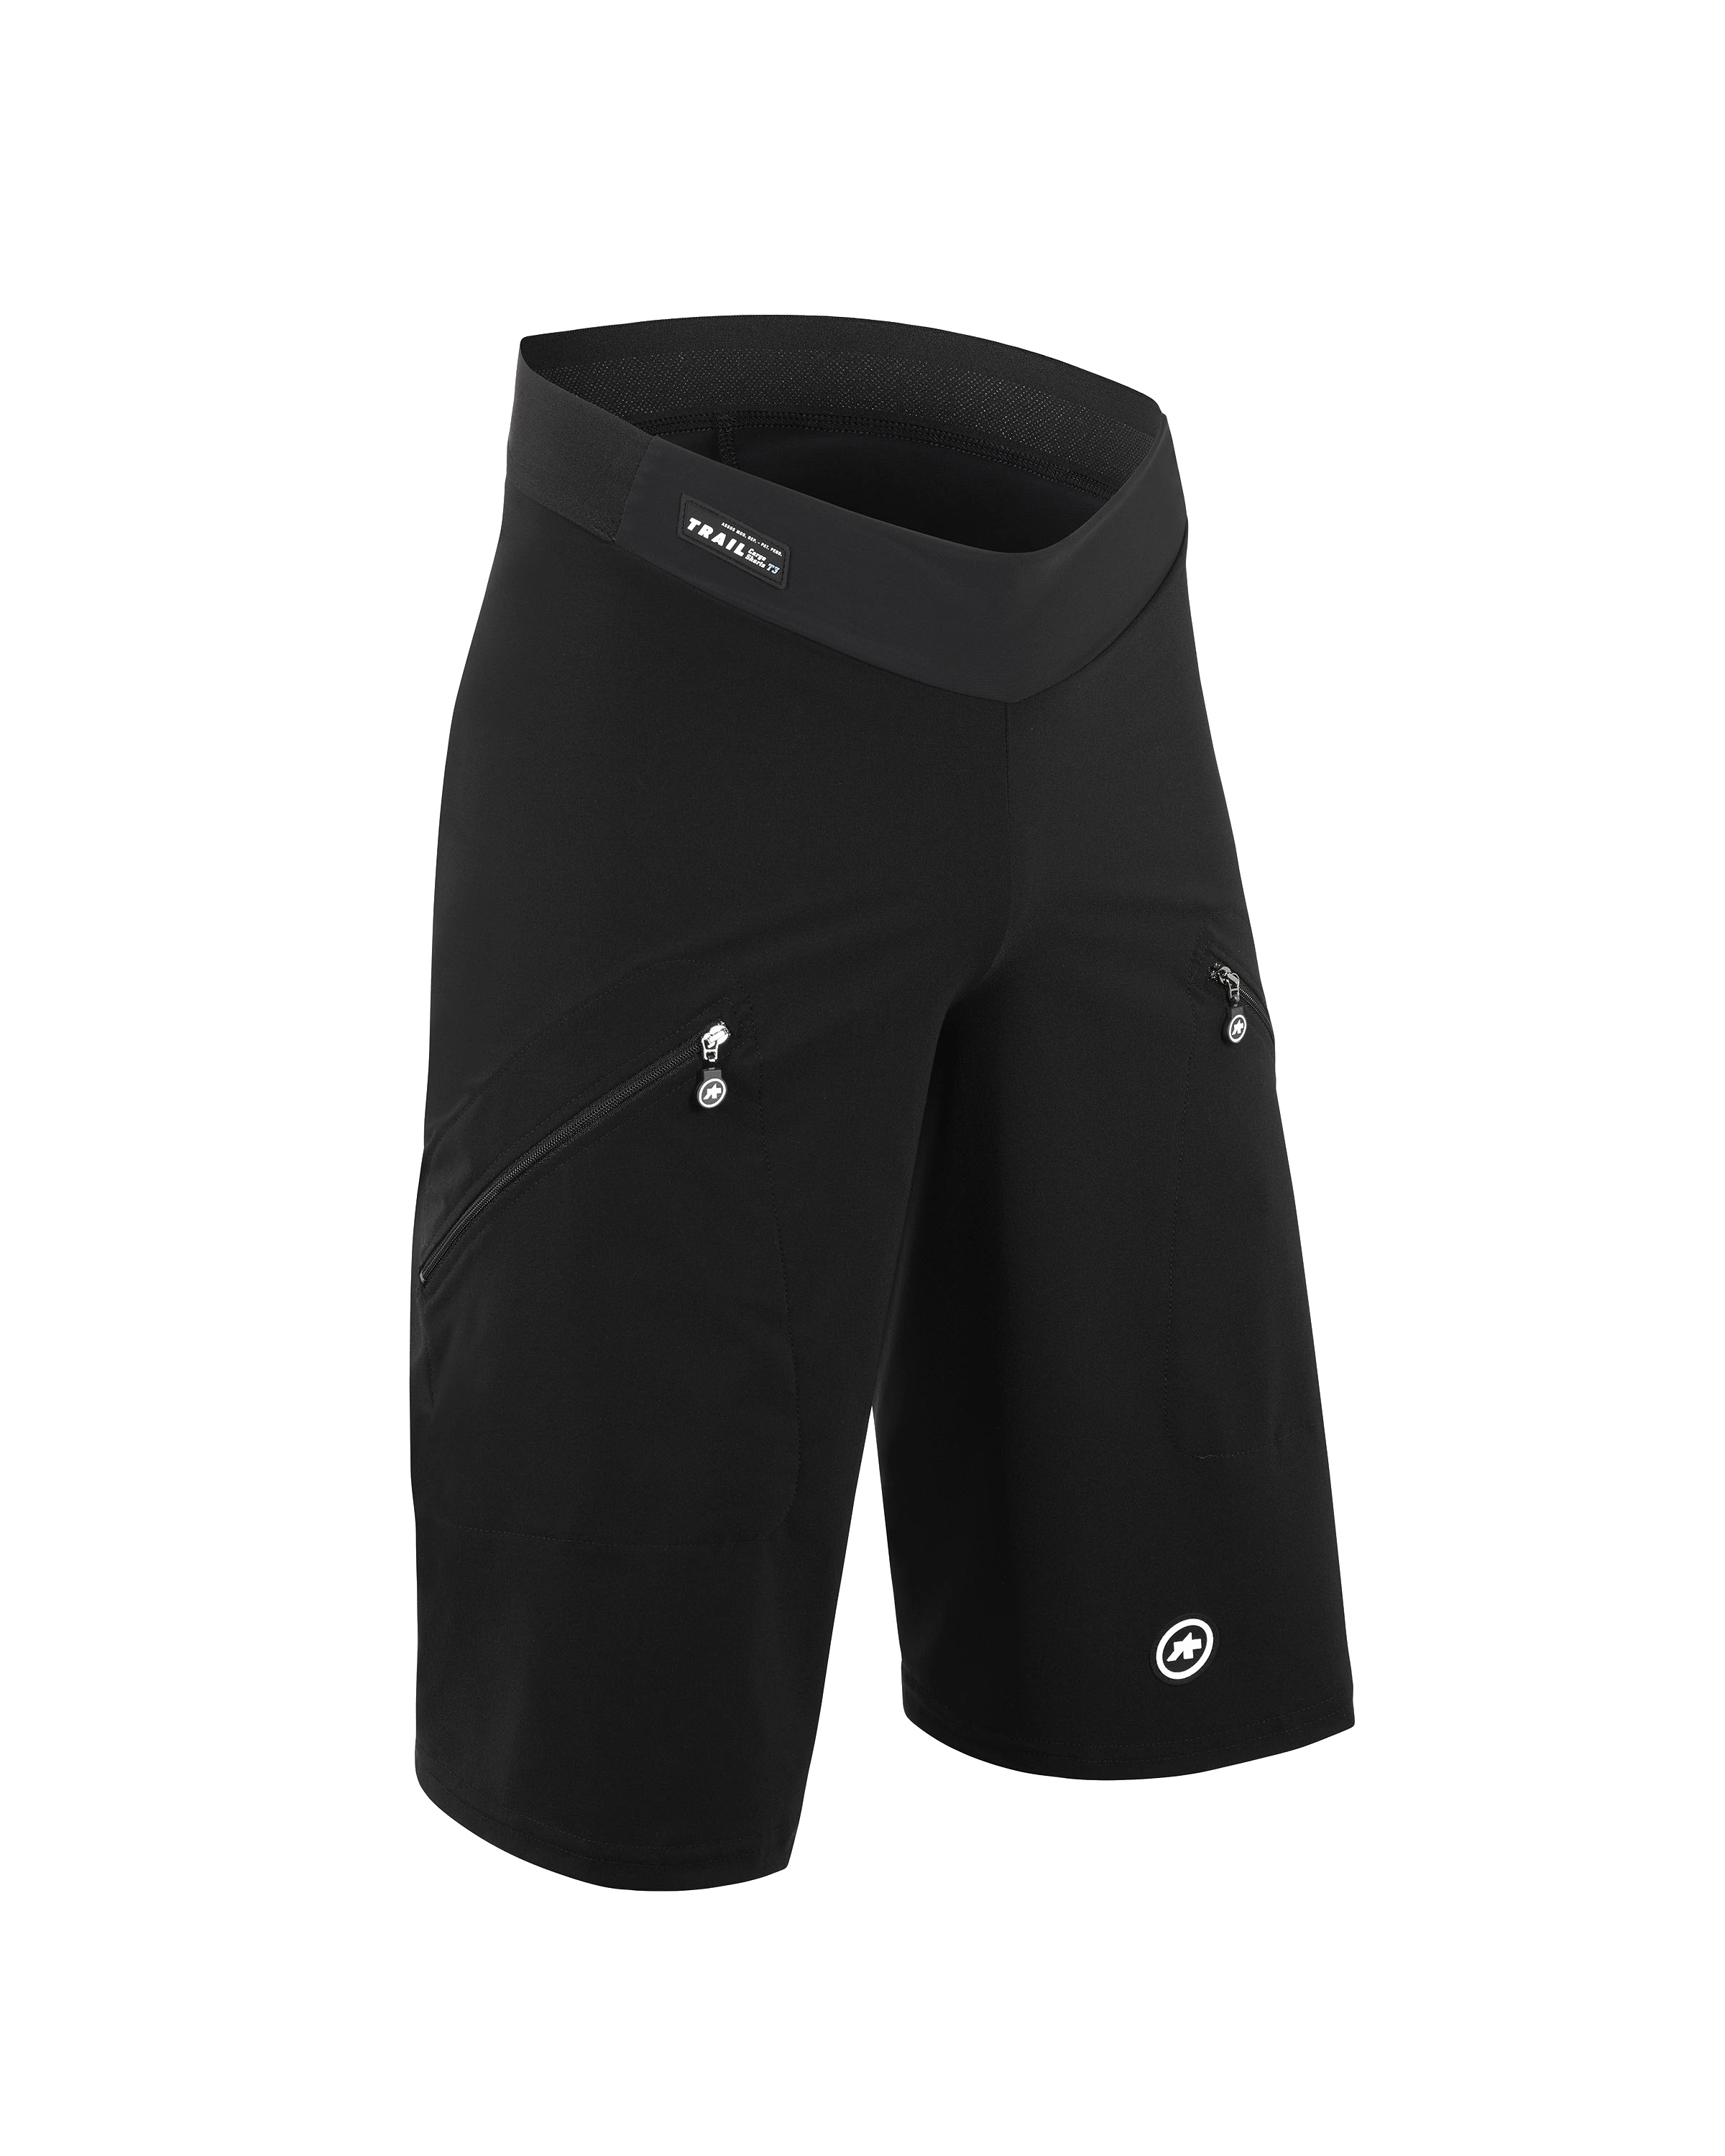 Велошорты ASSOS Trail Cargo Shorts T3 Black Series, мужские, черные, L фото 